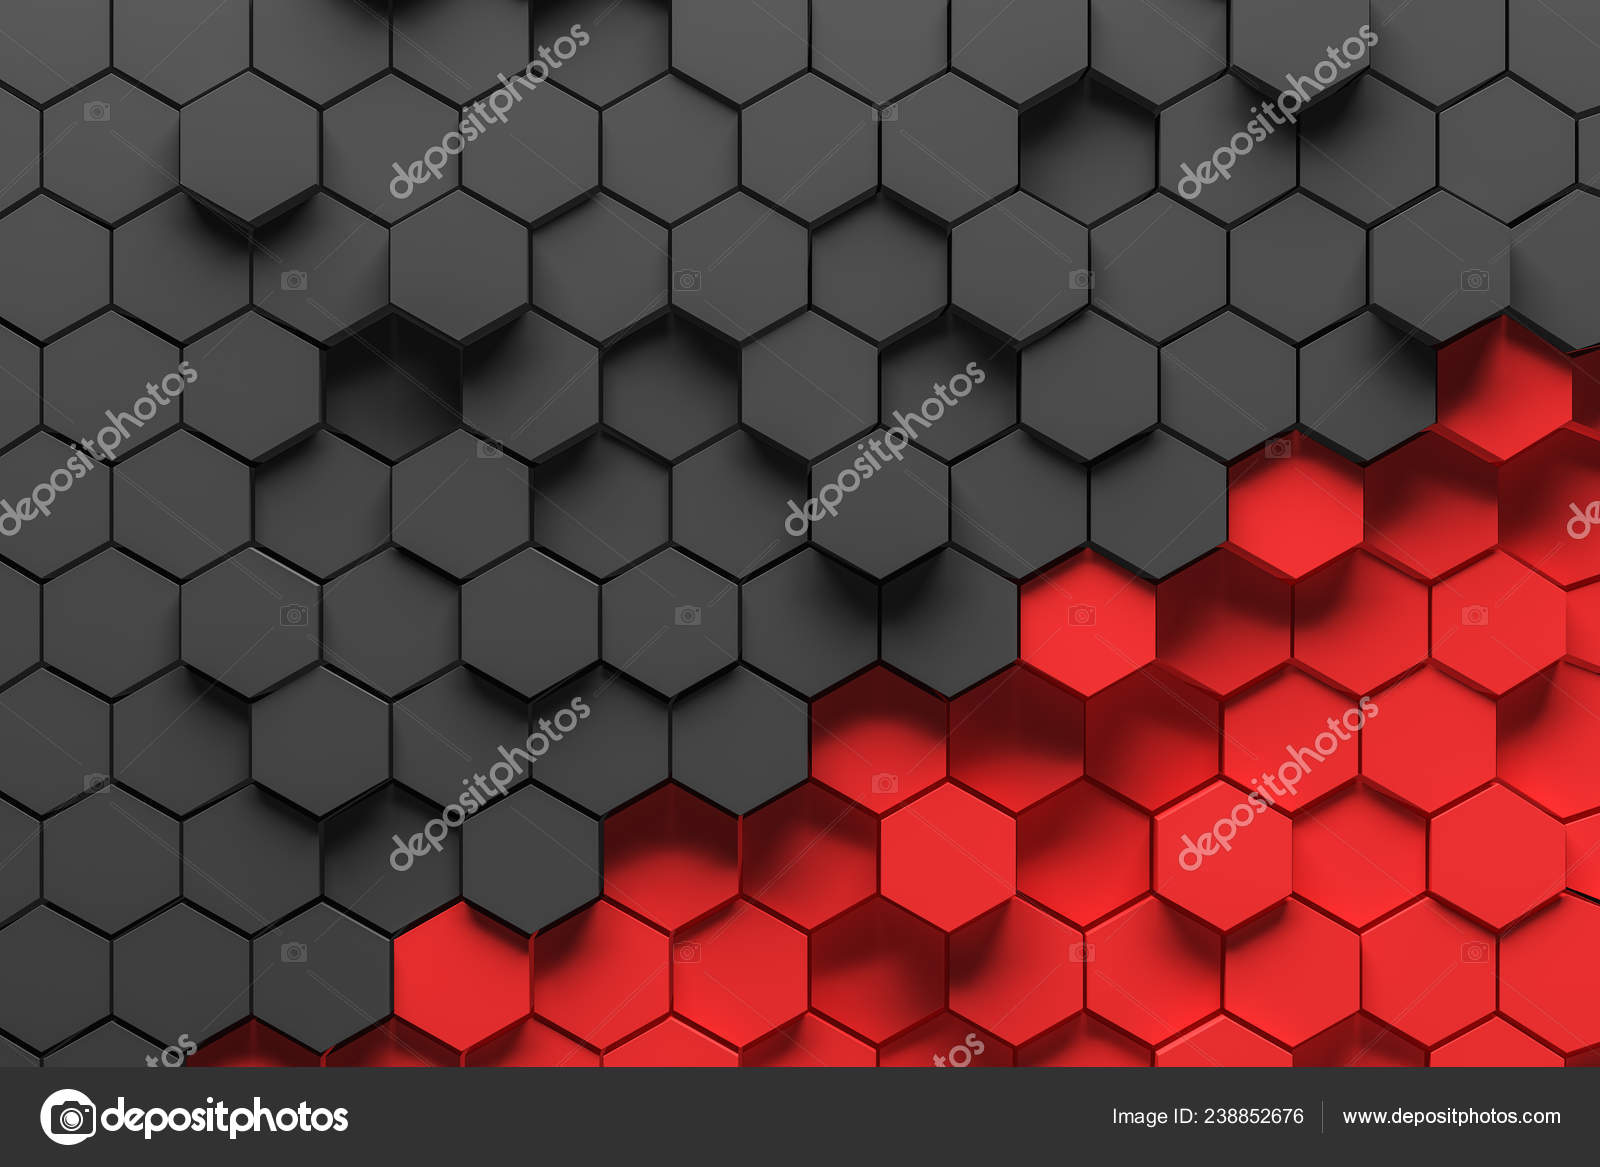 Với màu sắc đen đỏ từ những hexagon mang tính trừu tượng, hình ảnh này sẽ đưa bạn vào một không gian nghệ thuật hoàn toàn mới. Đừng bỏ lỡ cơ hội chiêm ngưỡng những đường nét tinh tế và đầy sáng tạo.